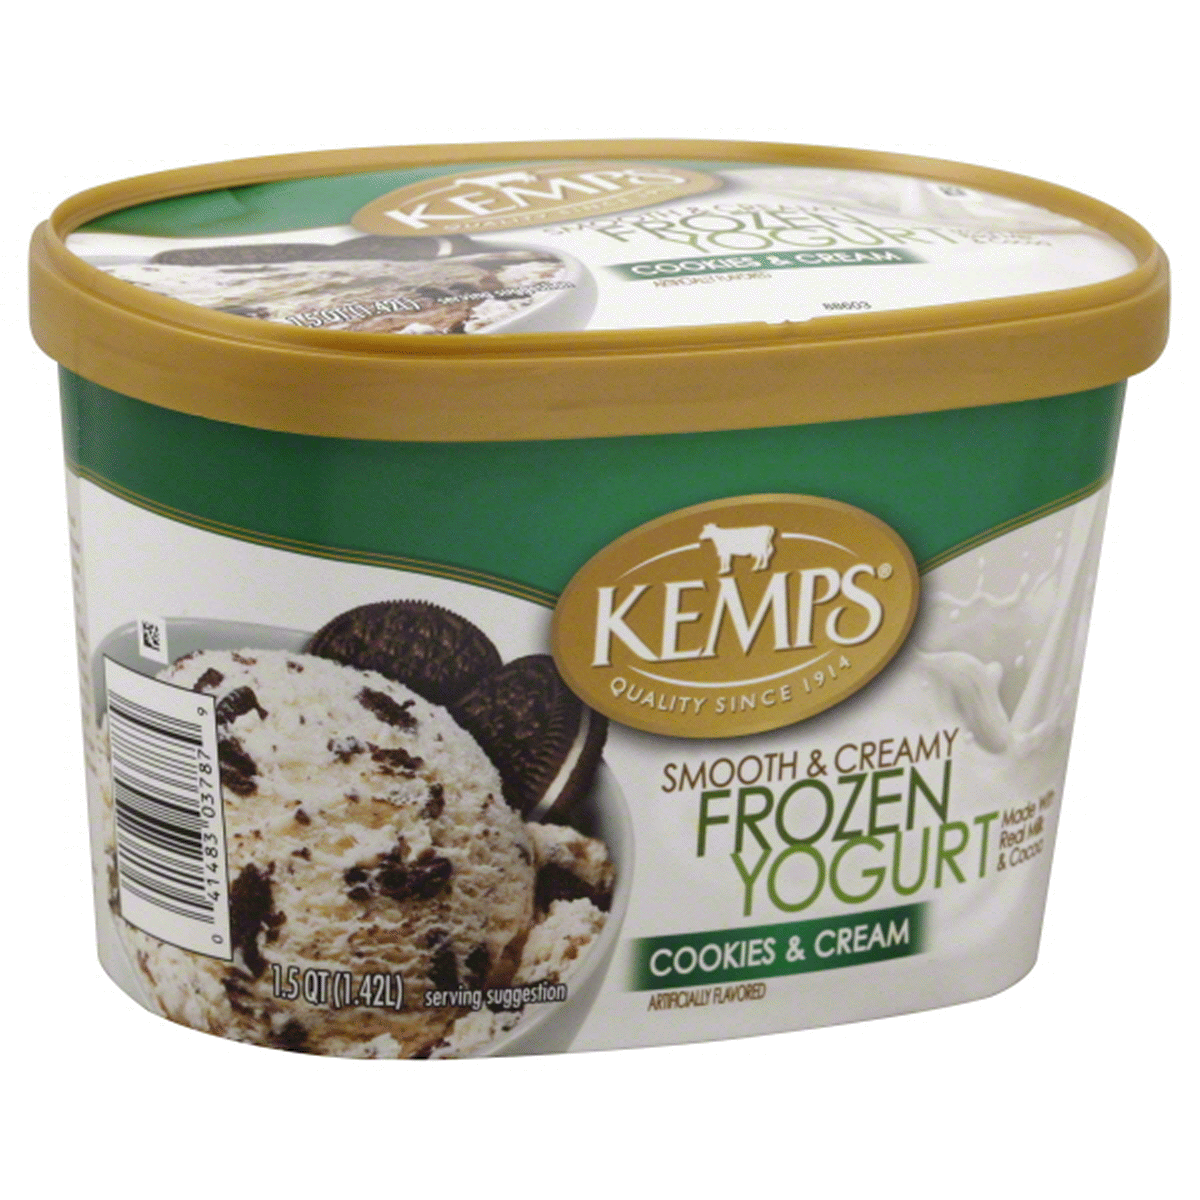 slide 1 of 1, Kemps Smooth & Creamy Cookies & Cream Frozen Yogurt, 1.5 qt